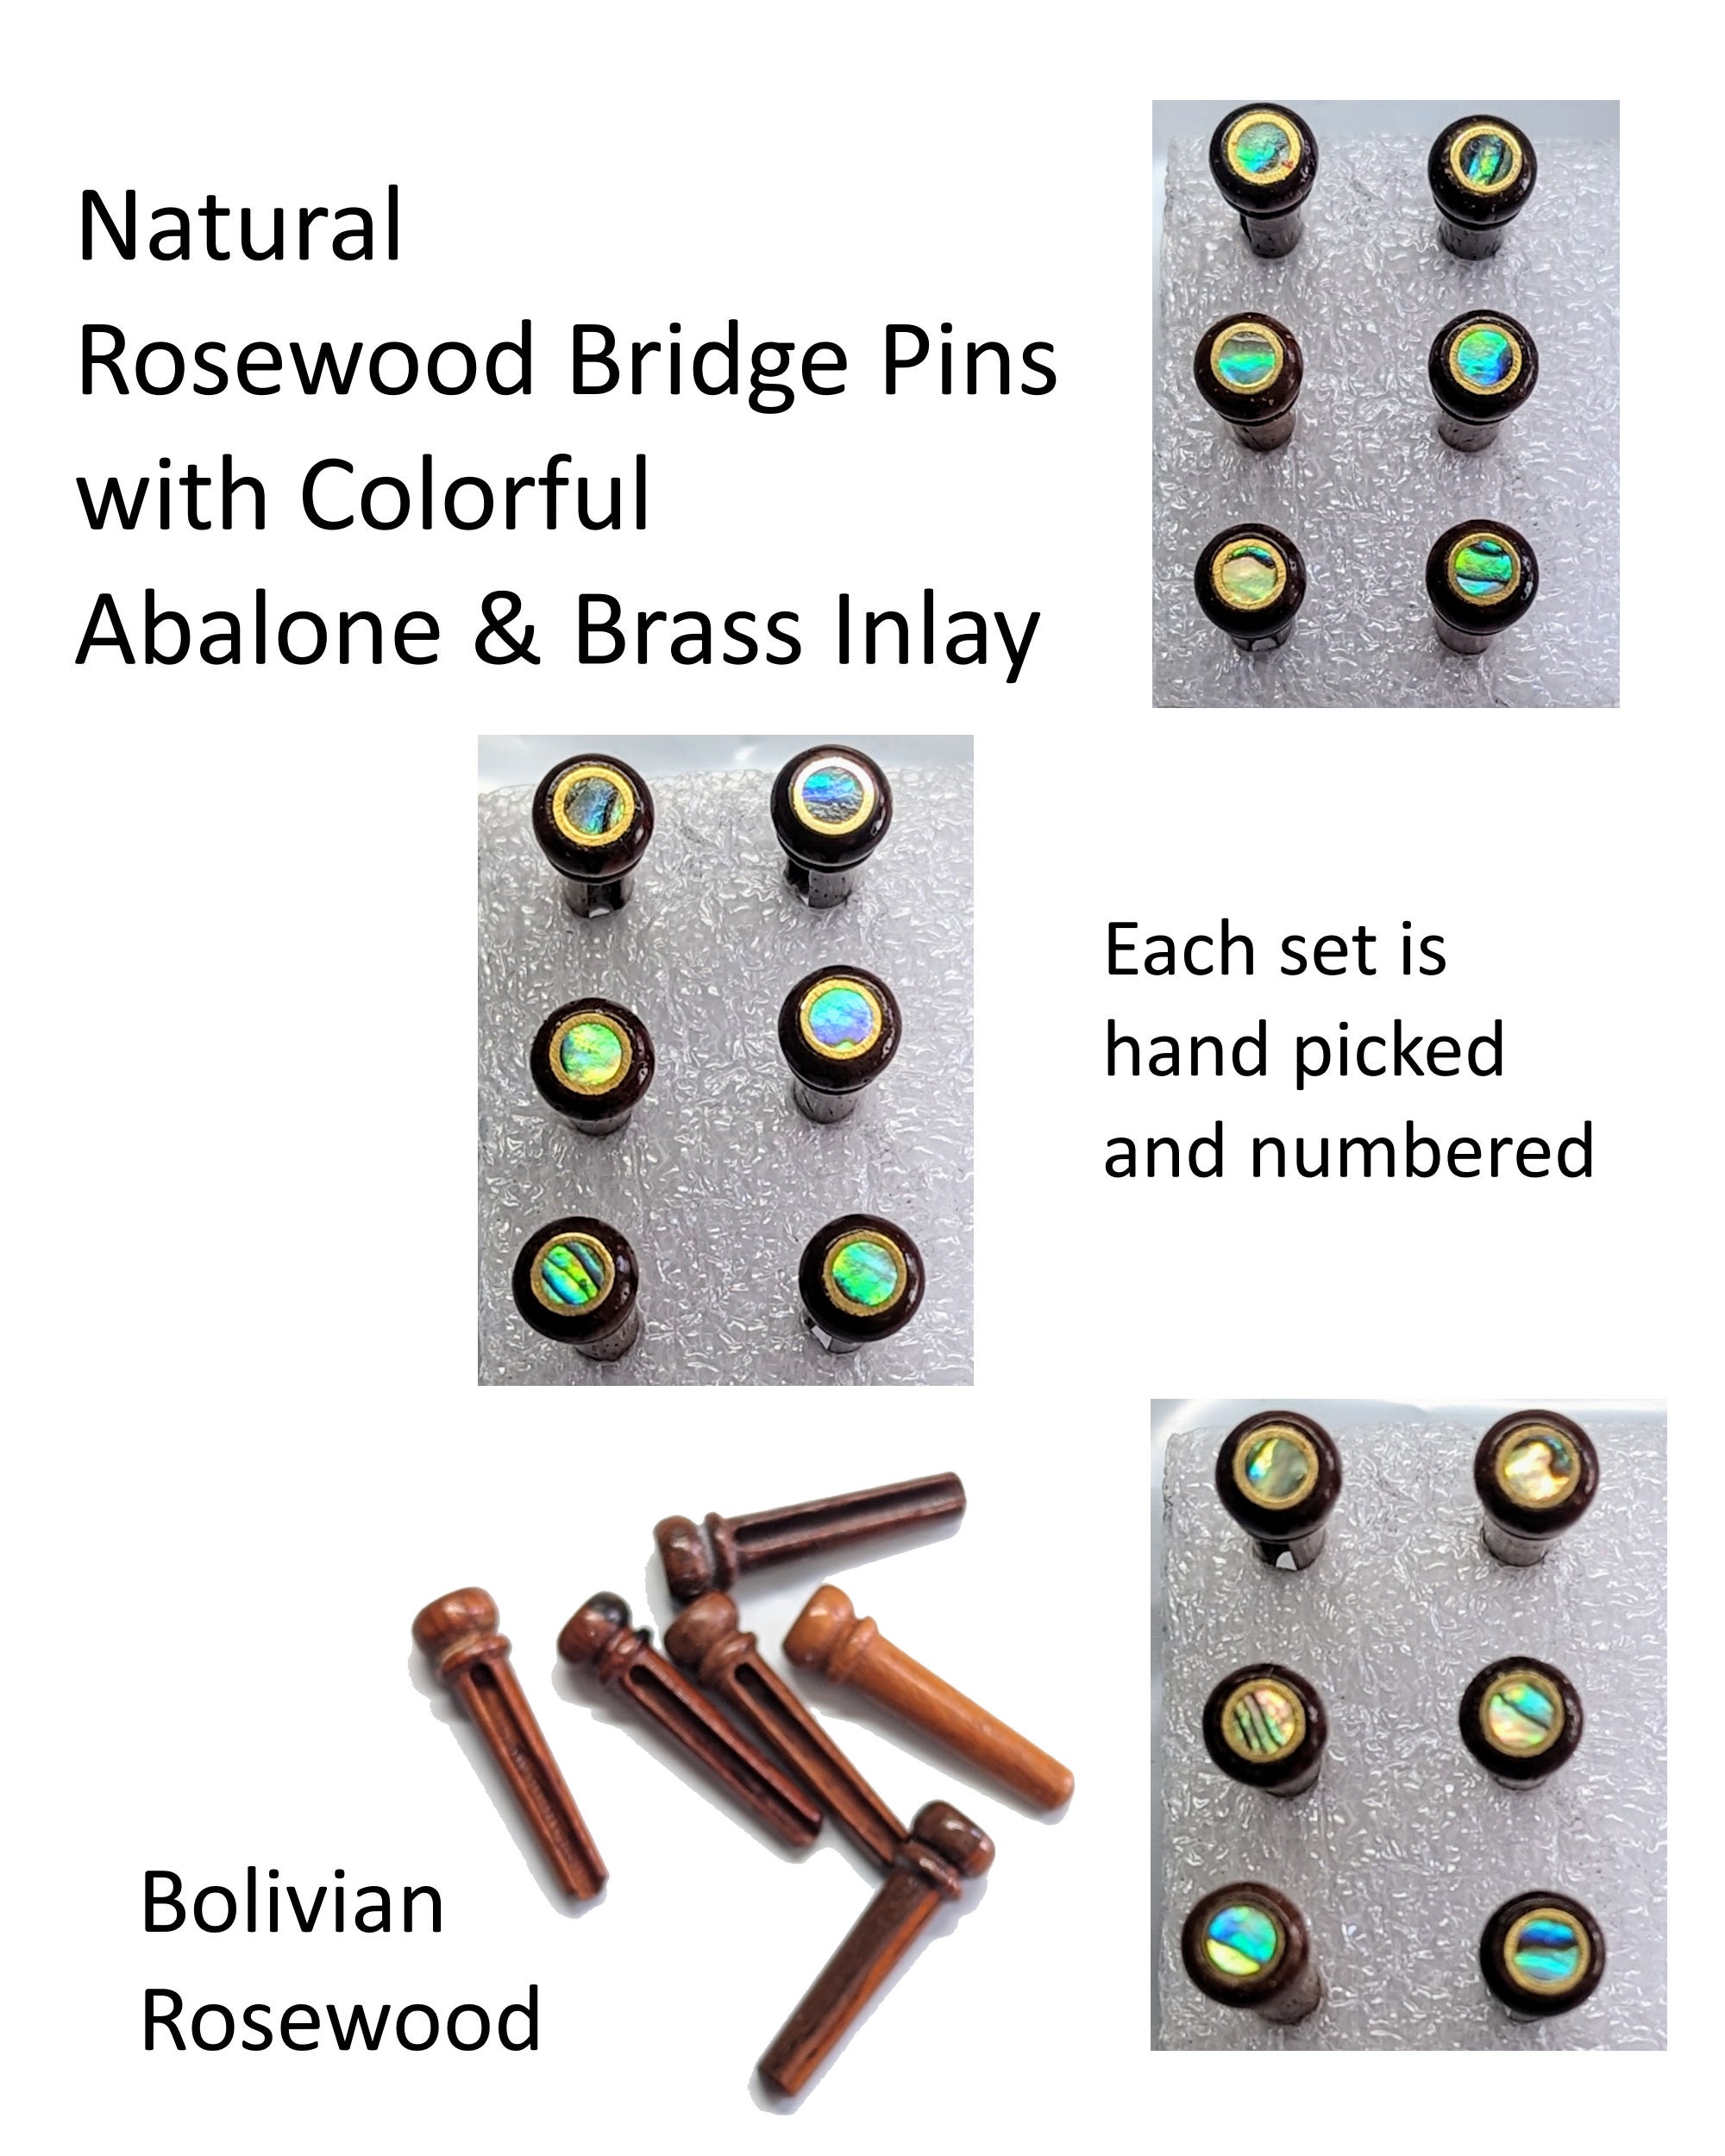 Bolivian Rosewood Shawl Pin and Ring Set